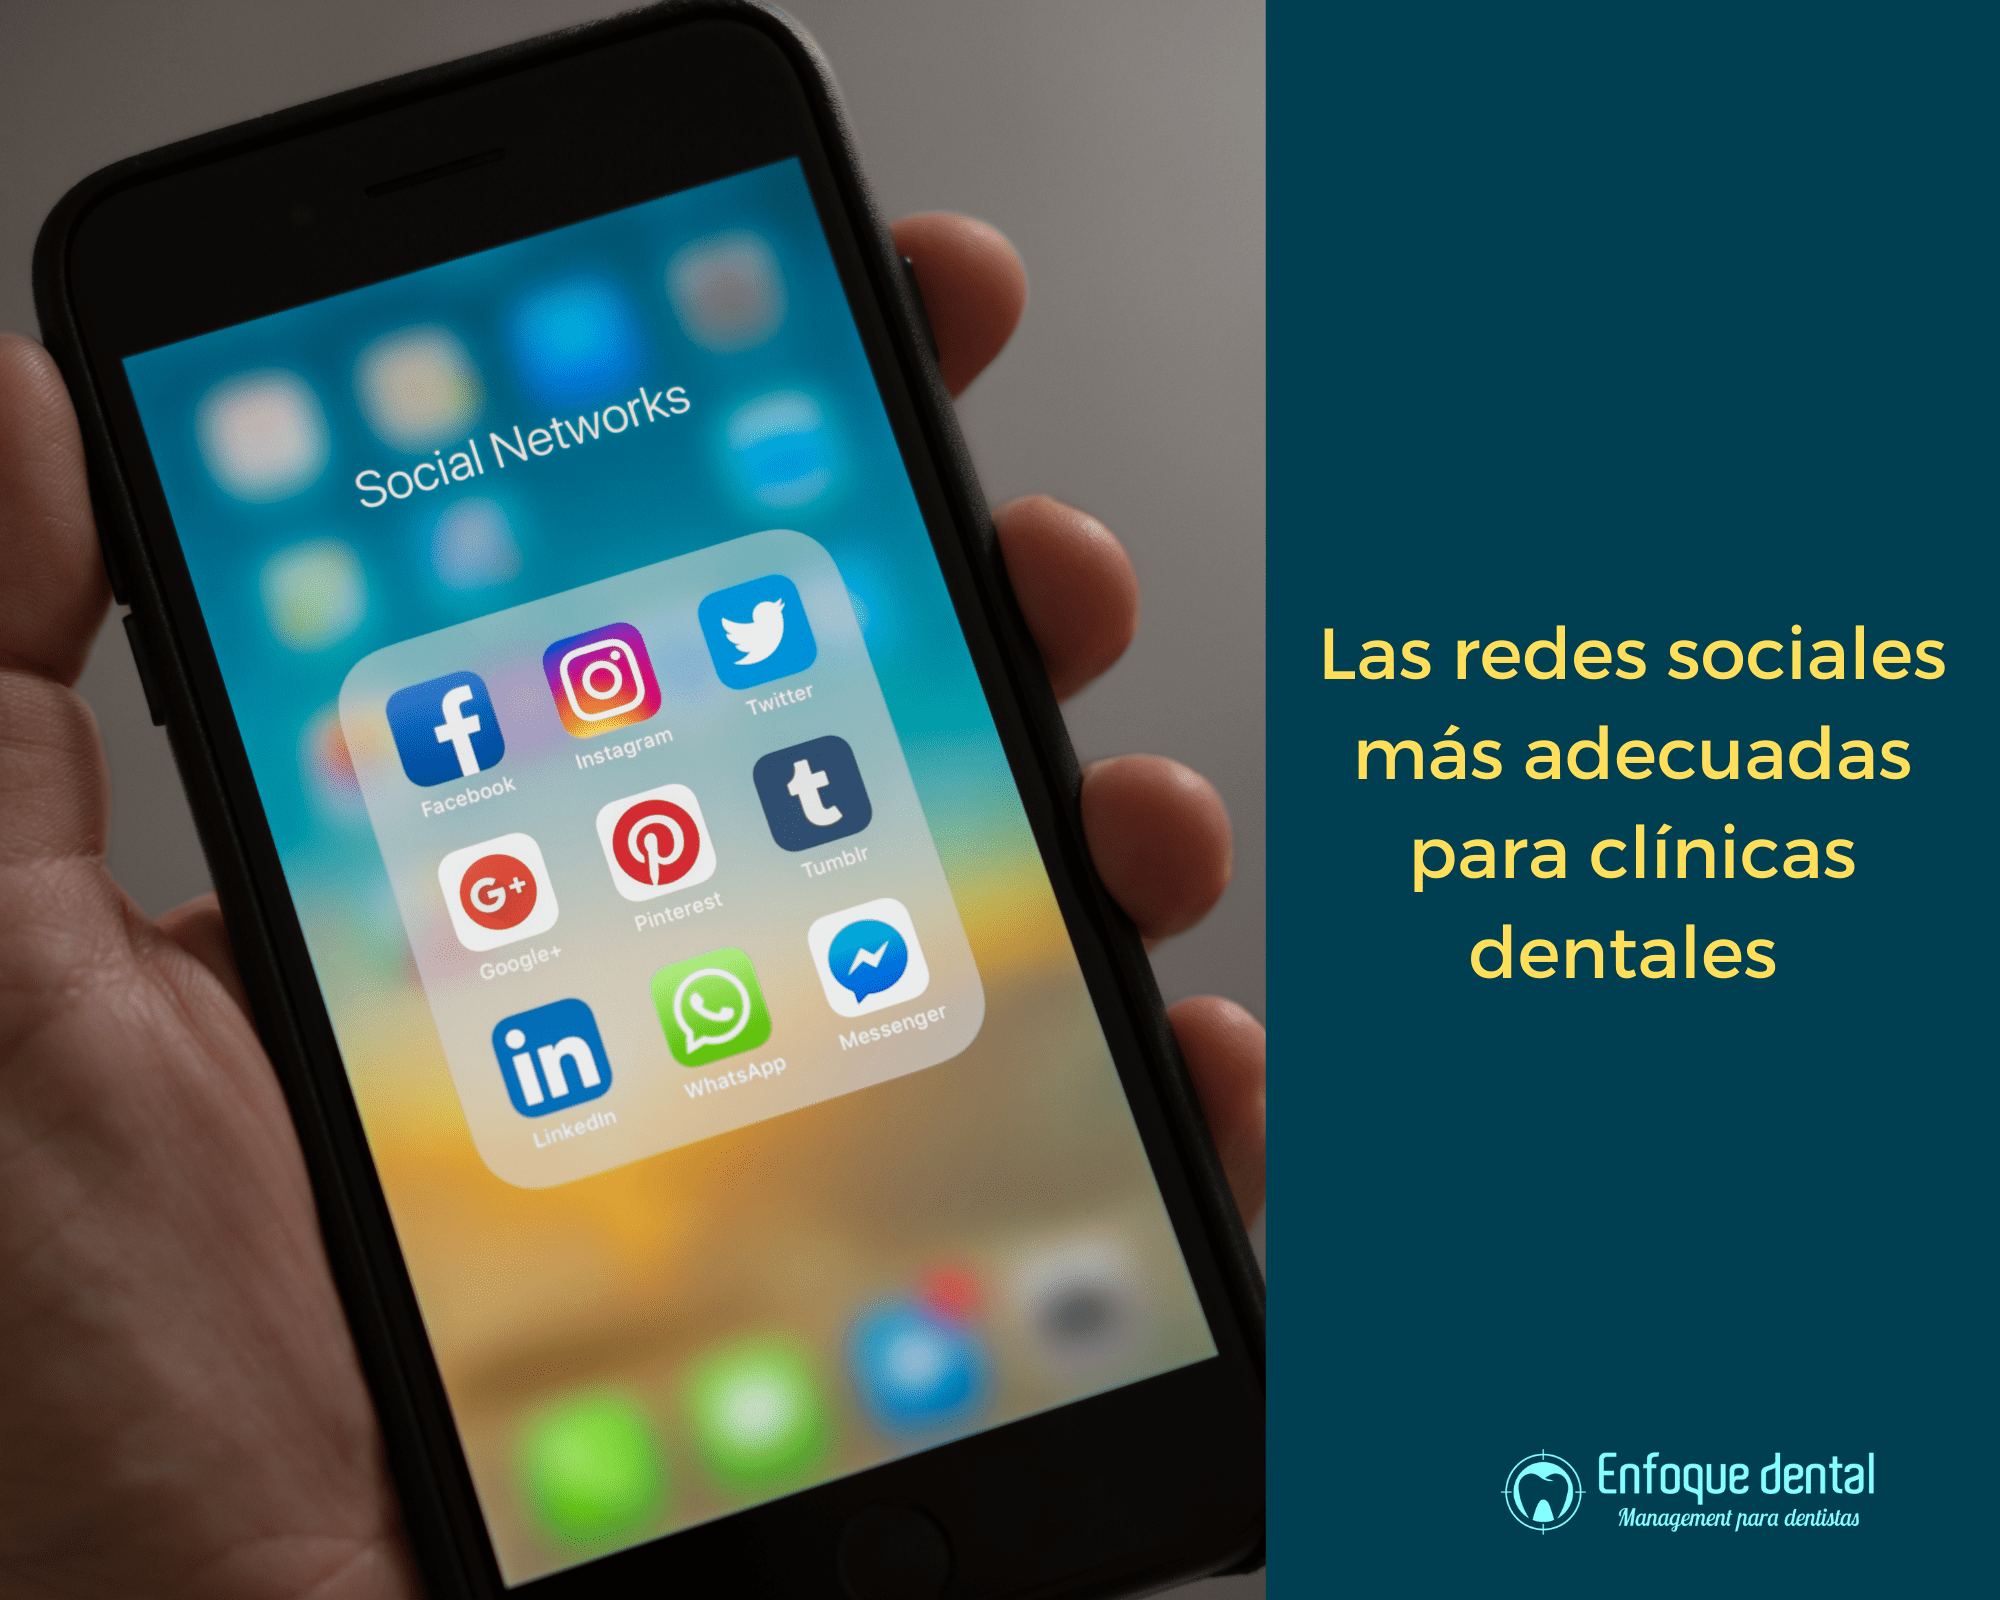 Las redes sociales más adecuadas para clinicas dentales